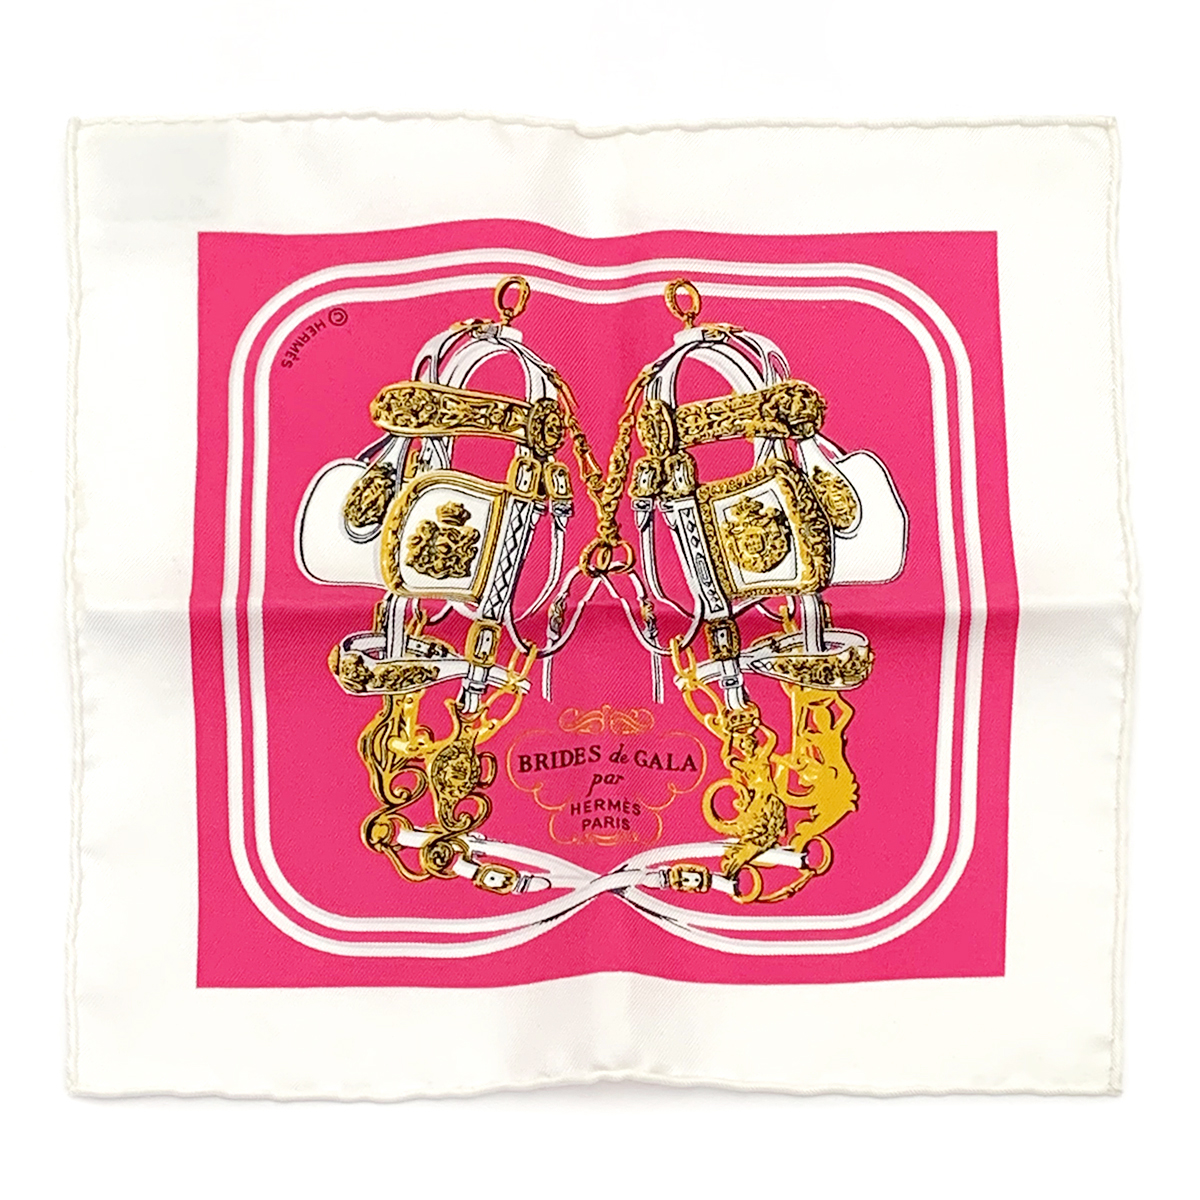 エルメス(HERMES) カレ ナノ 20cm 式典用馬勒(BRIDES DE GALA) ハンカチ スカーフ シルク100% ピンク